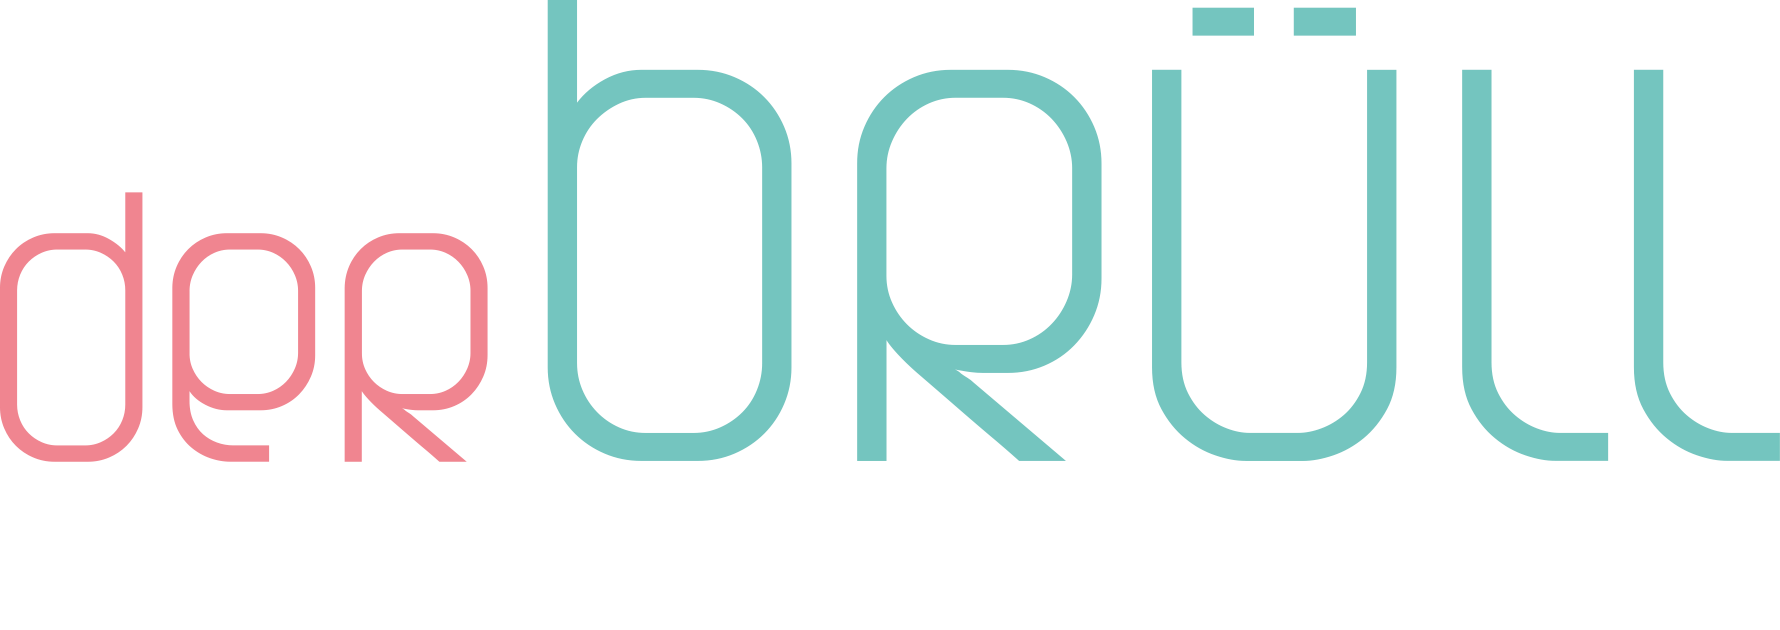 Logo-der-Bruell-CHOR.png